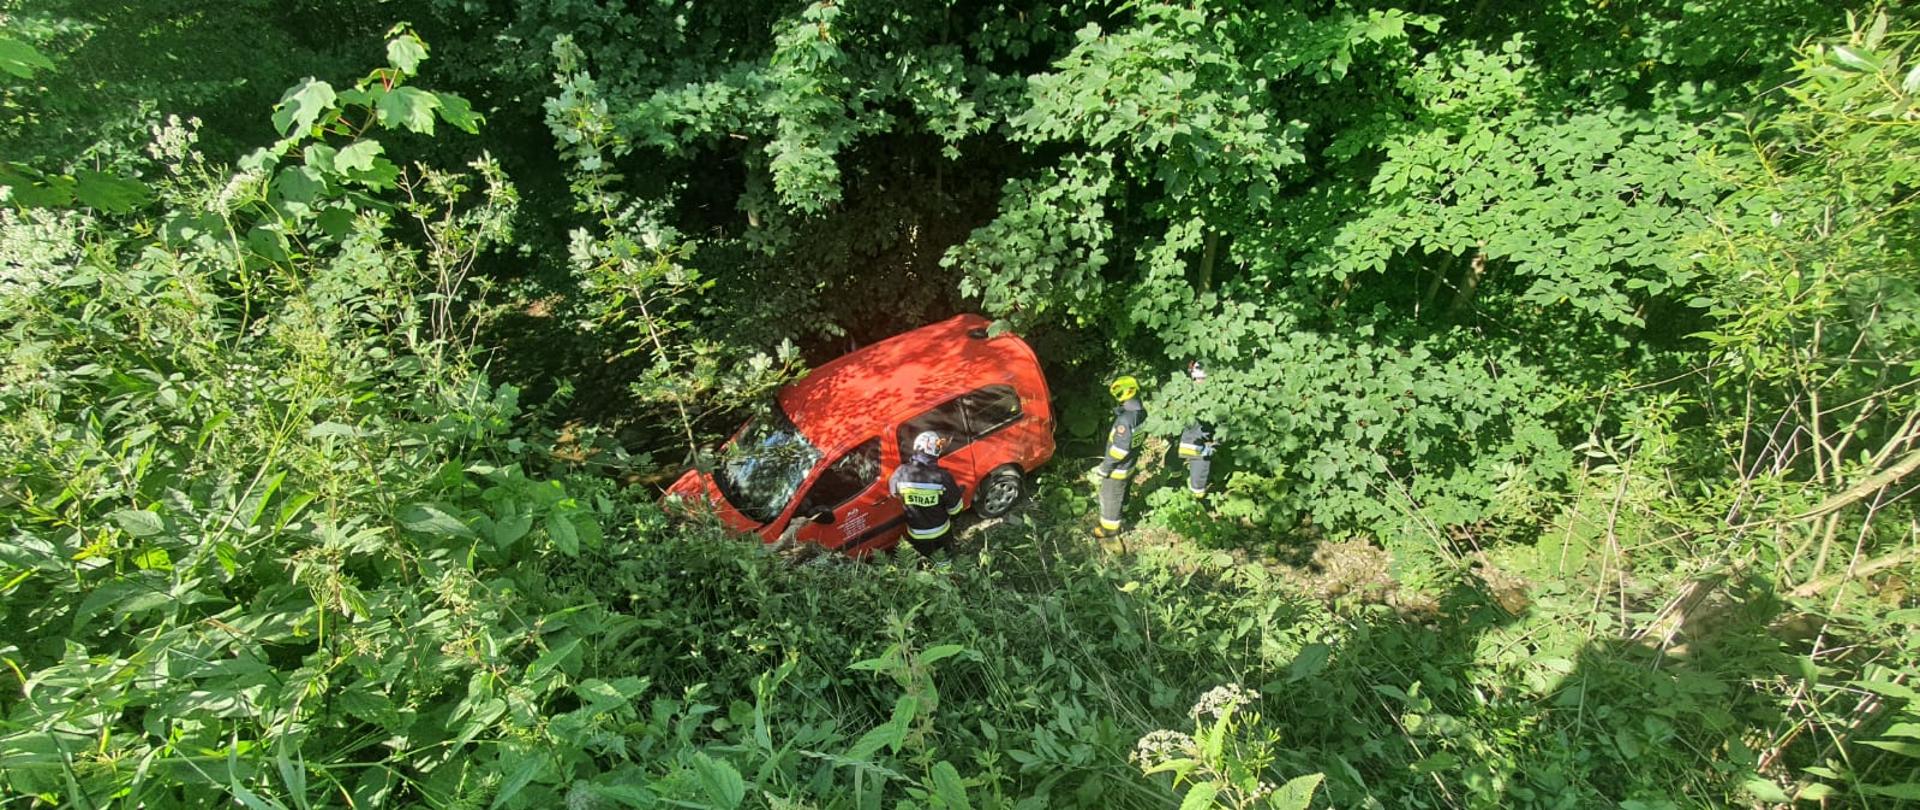 Samochód osobowy koloru czerwonego w zaroślach w potoku.